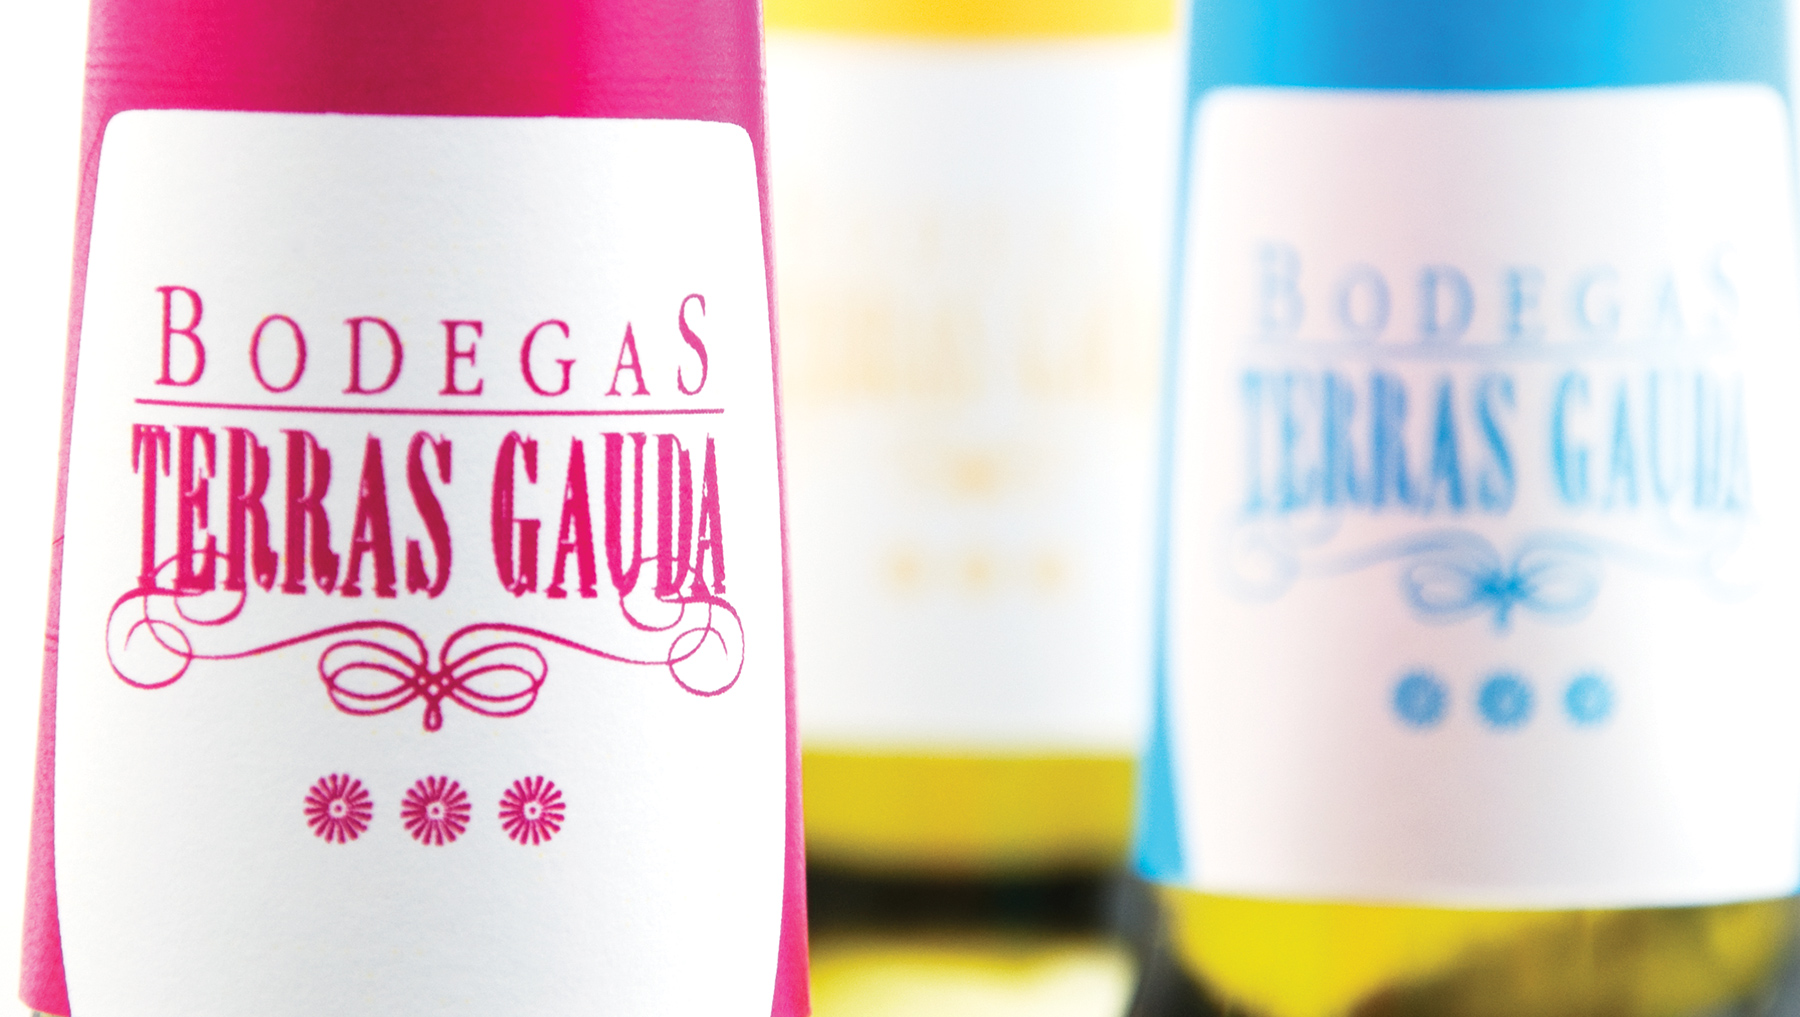 TerrasGauda Wine Bottle Design